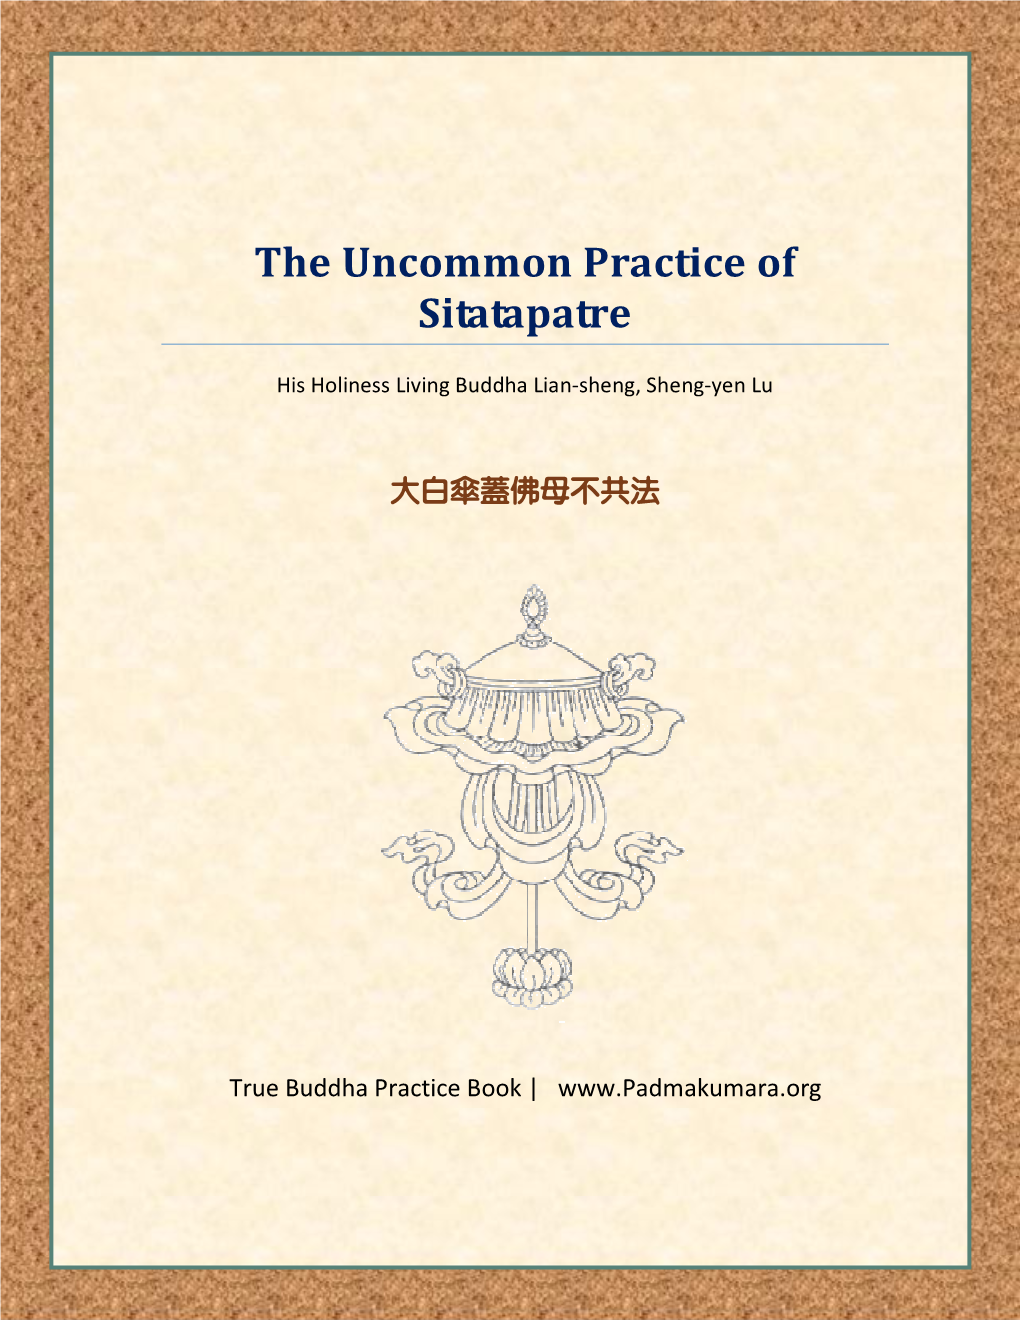 The Uncommon Practice of Sitatapatre